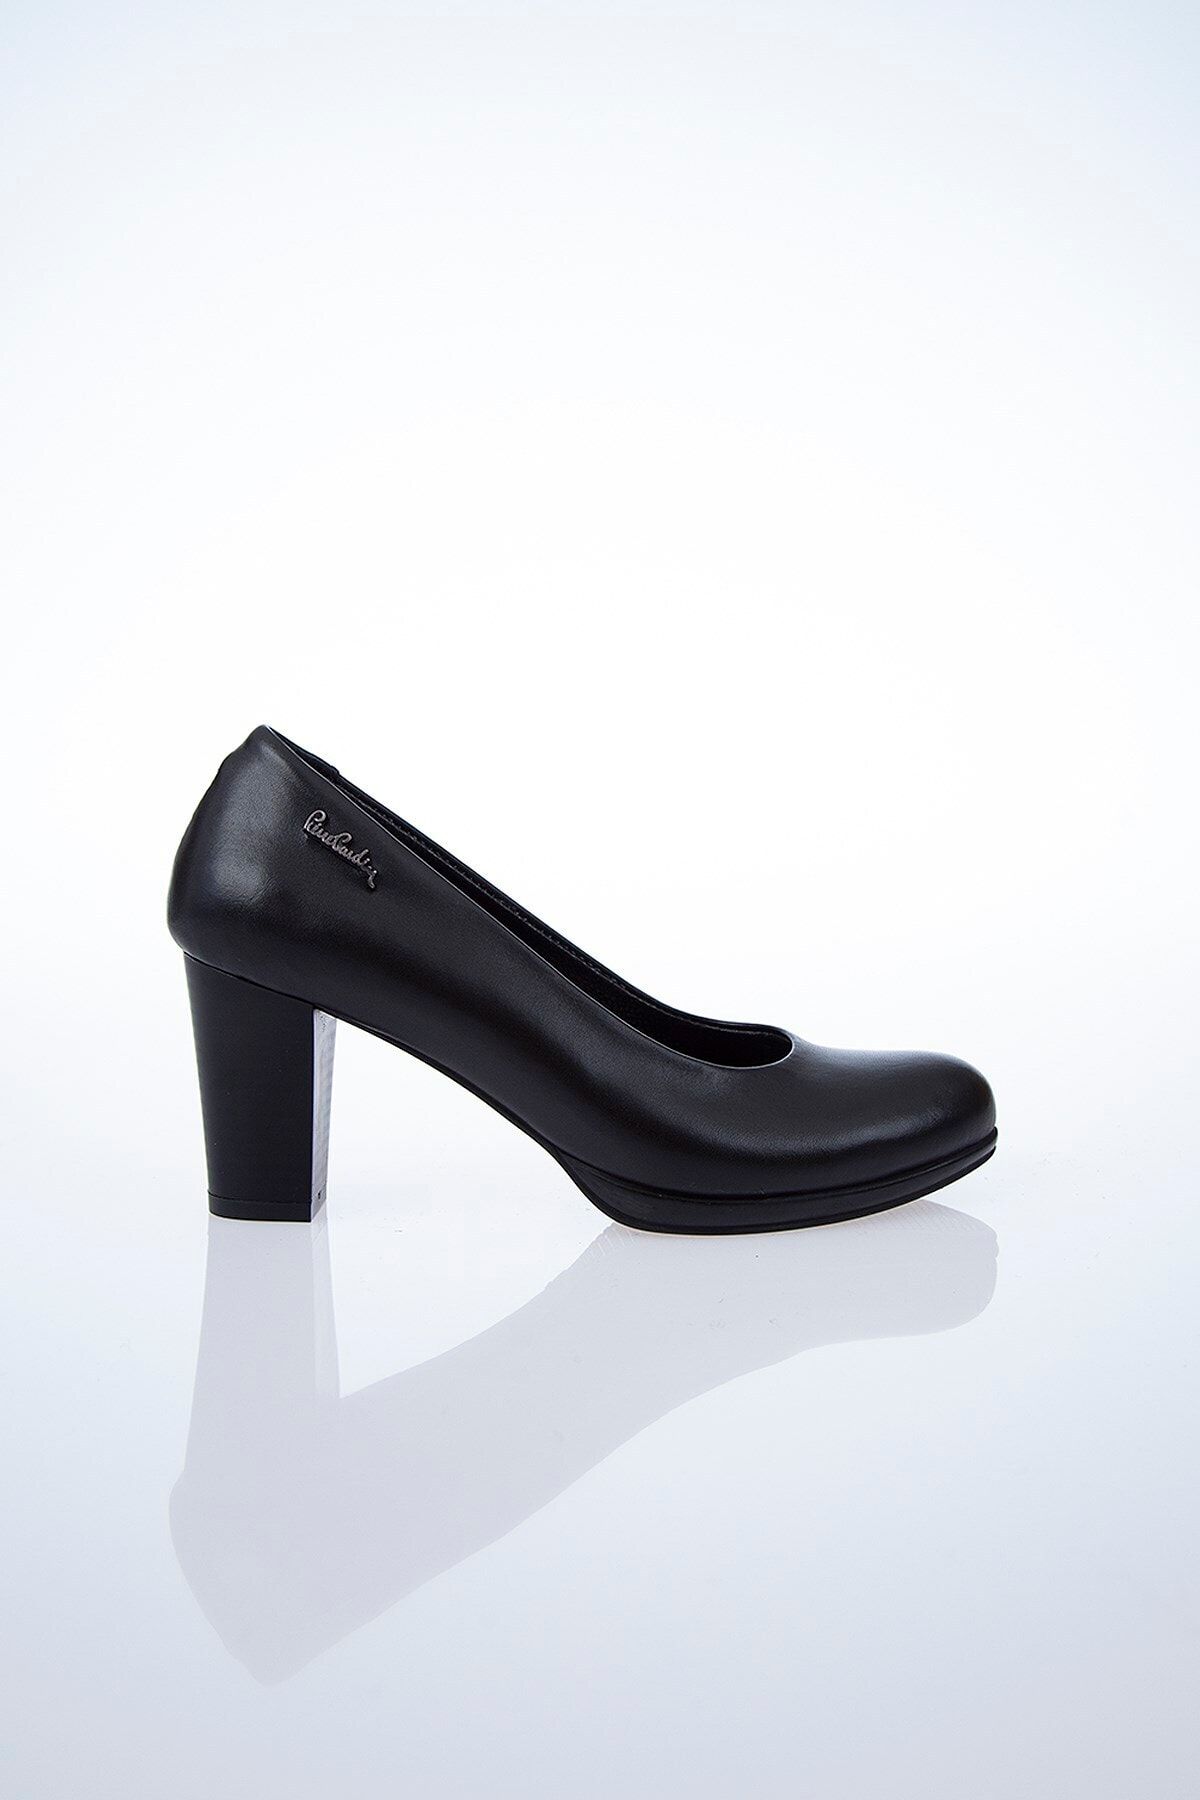 Pierre Cardin Pc-50025 Siyah Kadın Ayakkabı